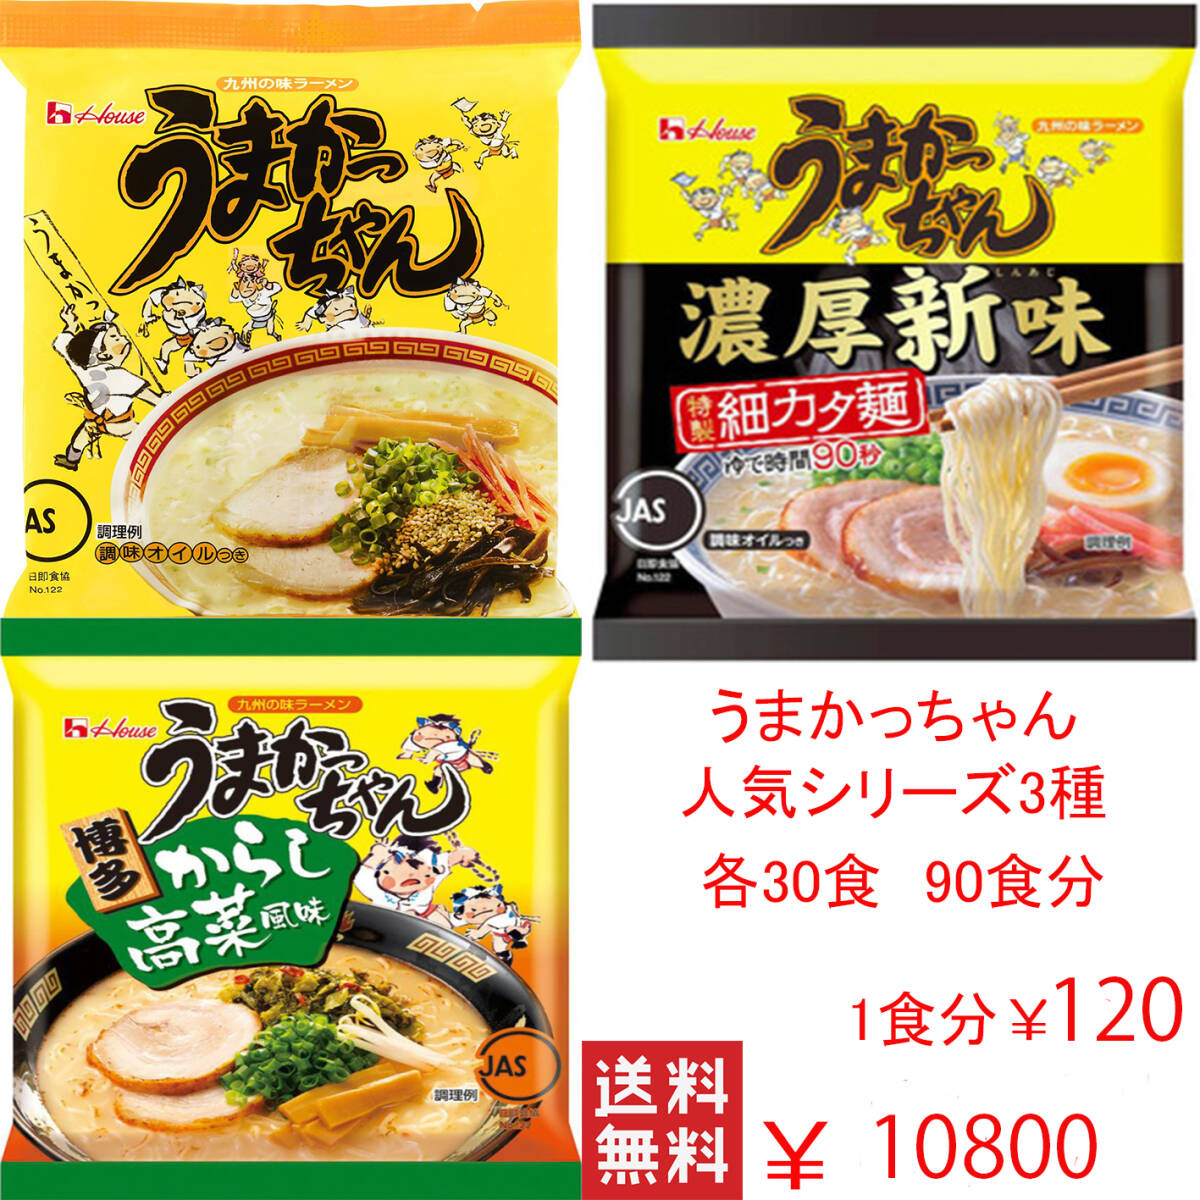 Большая специальная цена ¥ 10800 → ¥ 9800 Ограниченное количество ограниченного дешевого Умакачана Популярные серии 3 типа 30 питаний на 90 блюд по всей стране бесплатная доставка 313